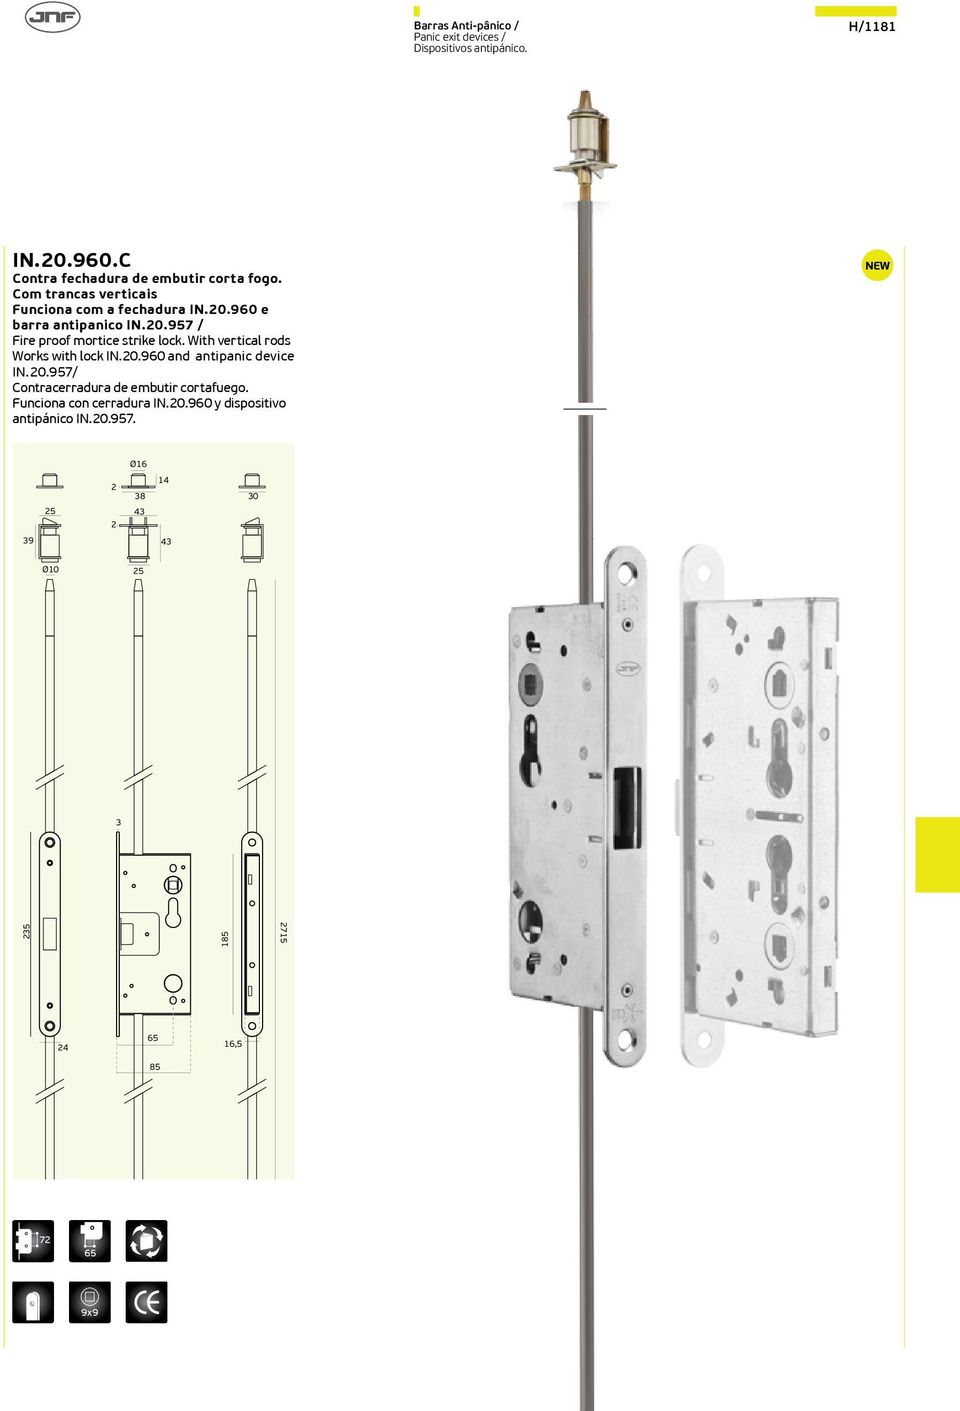 With vertical rods Works with lock IN.20.960 and antipanic device IN.20.957/ Contracerradura de embutir cortafuego.